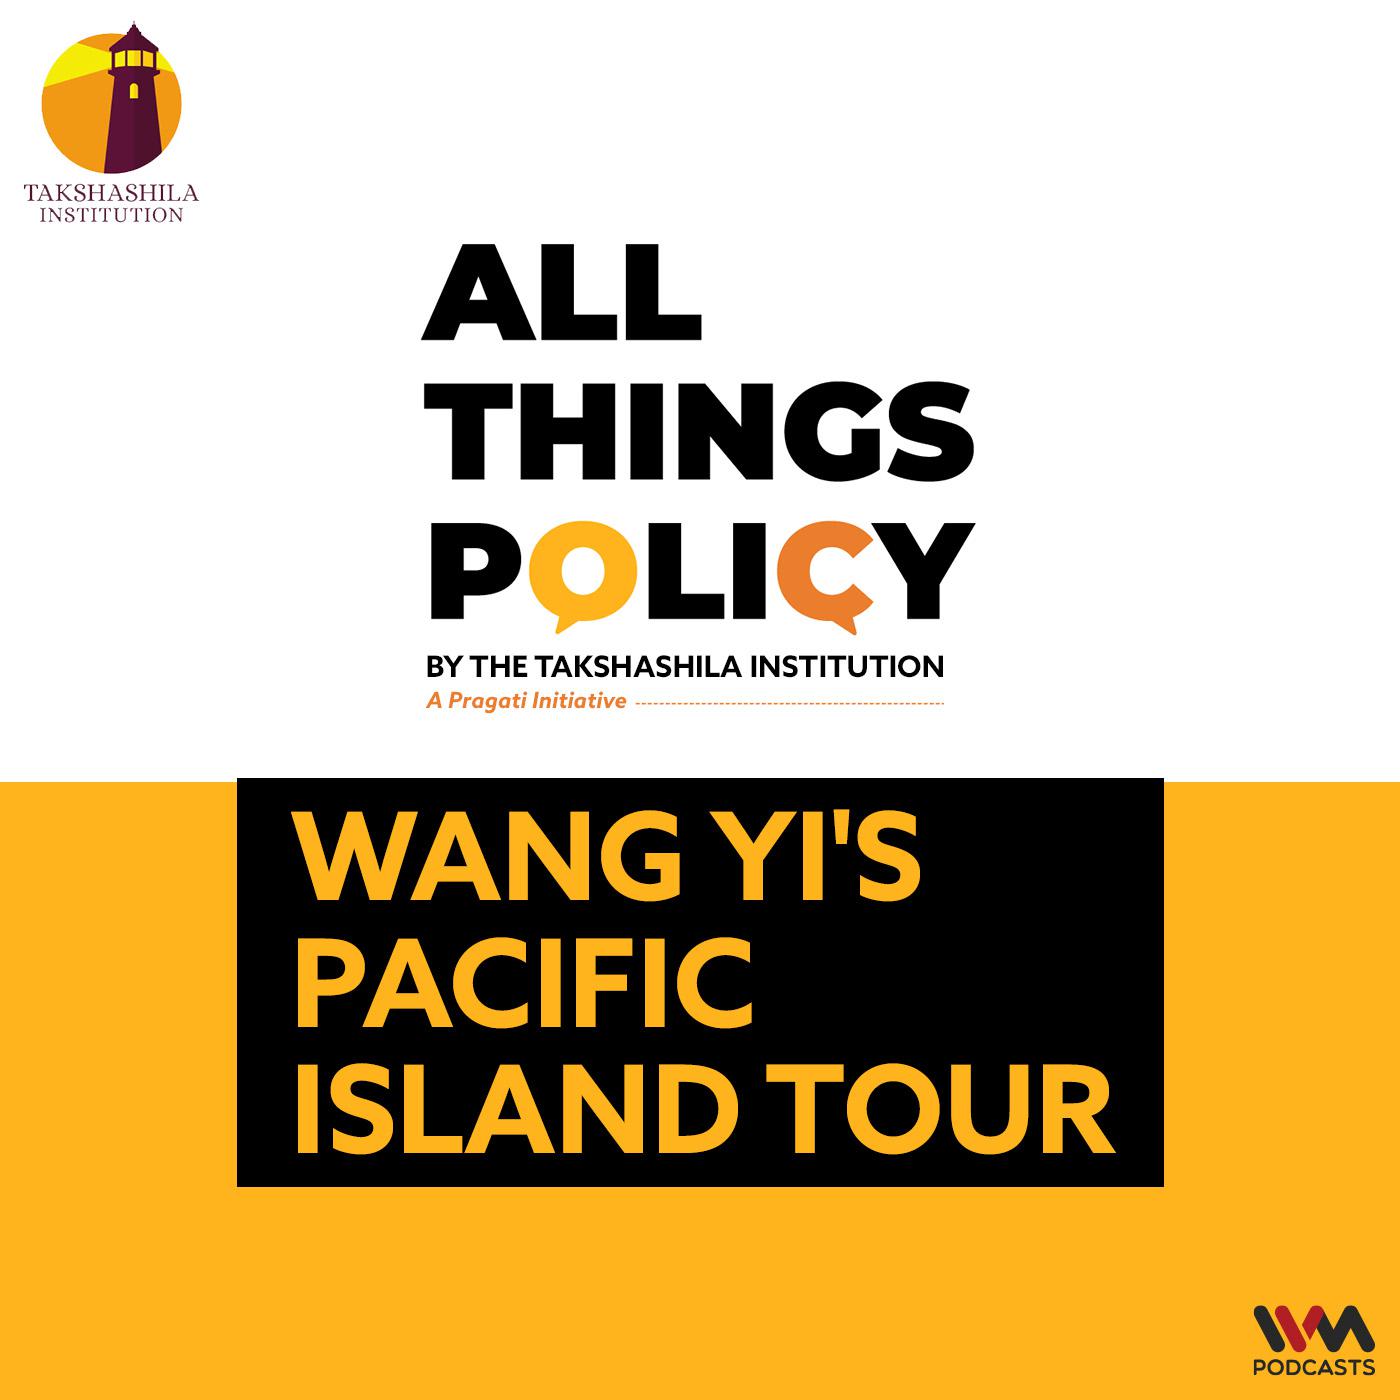 Wang Yi's Pacific Island Tour